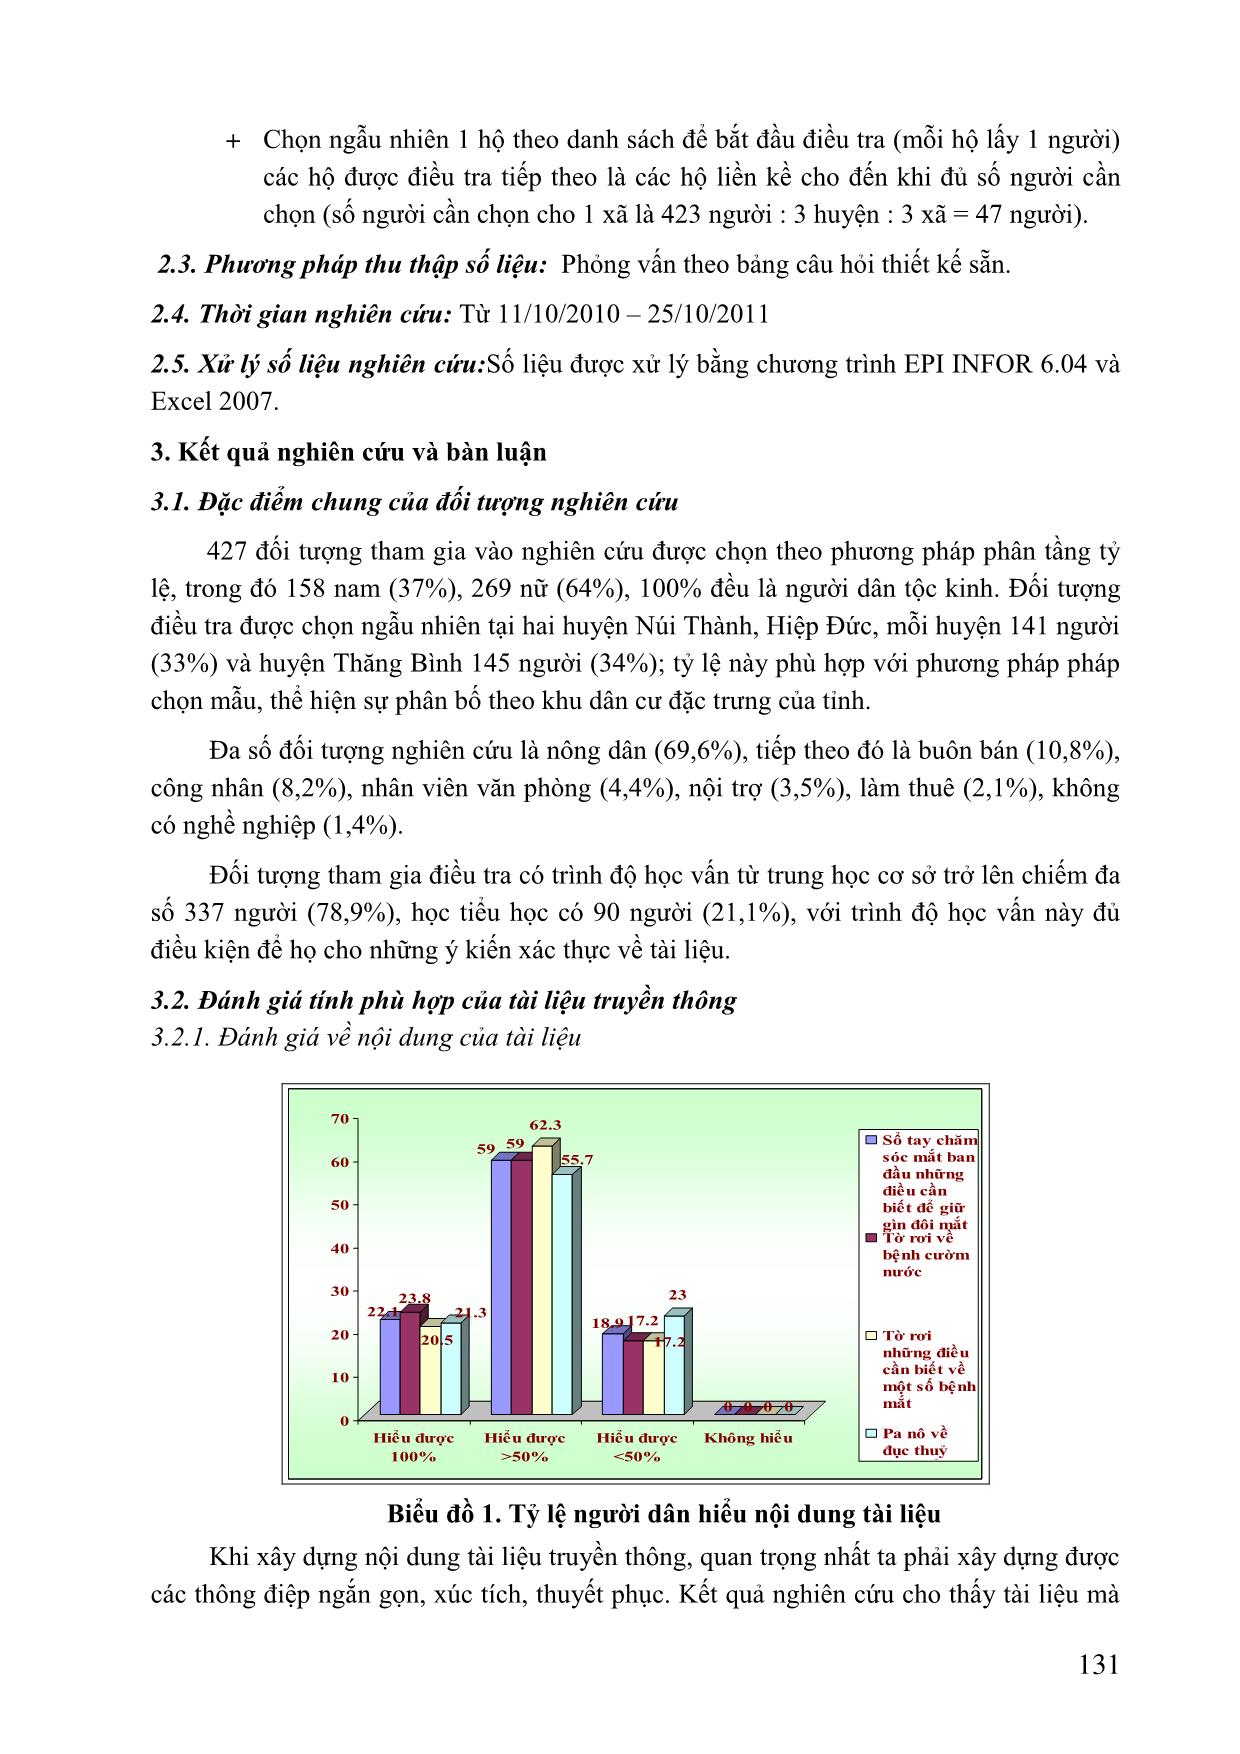 Đánh giá tính phù hợp của tài liệu truyền thông chăm sóc mắt tại tỉnh Quảng Nam trang 3